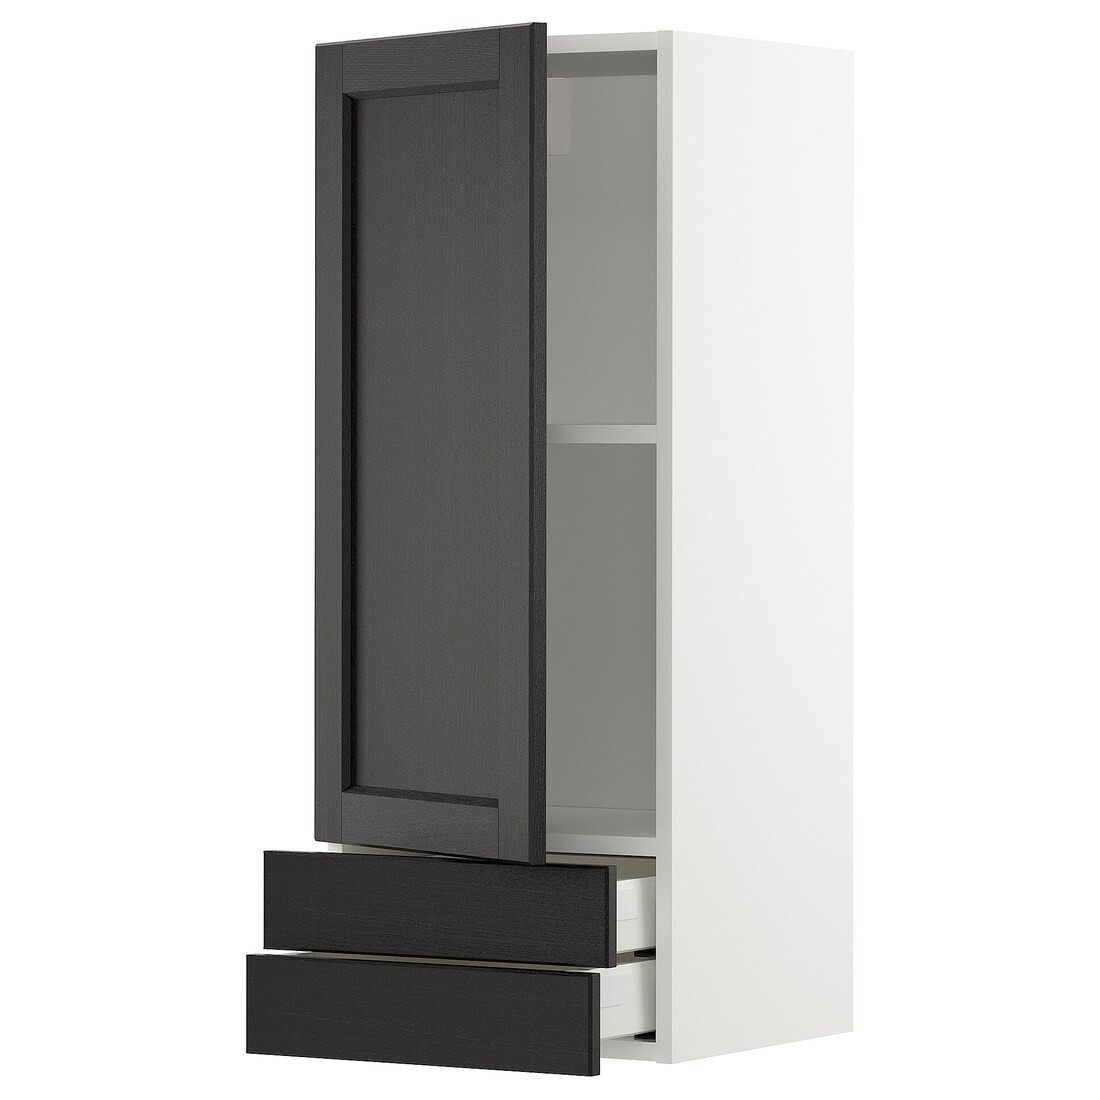 IKEA METOD МЕТОД / MAXIMERA МАКСИМЕРА Настенный шкаф, дверь / 2 ящика, белый / Lerhyttan черная морилка 59464998 | 594.649.98